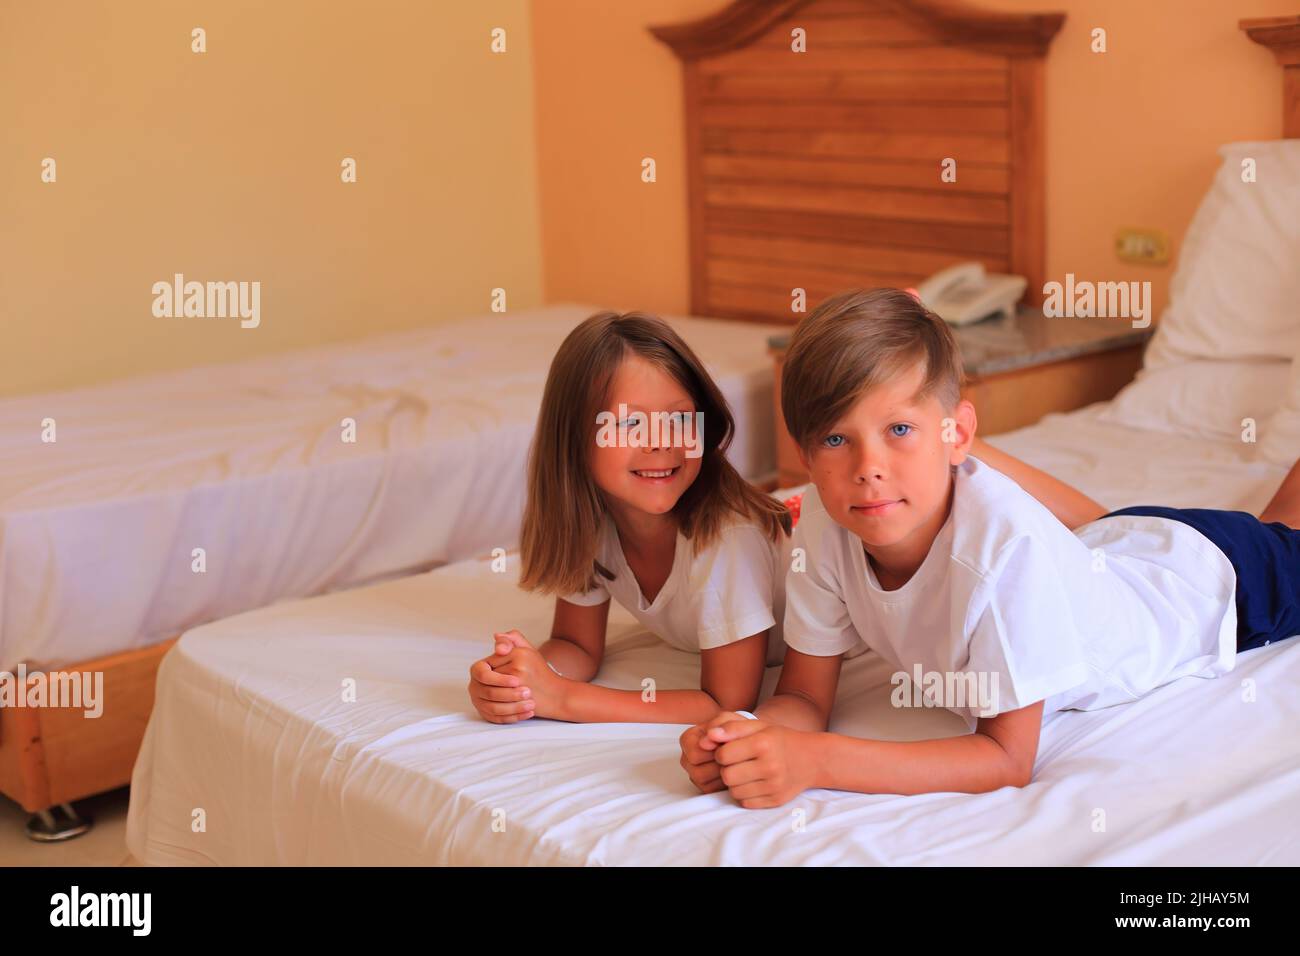 Zwei Kinder liegen im Urlaub in einem Hotelzimmer auf einem Bett mit weißen Laken. Kinder spielen zu Hause auf dem Bett mit weißen Laken. Junge und Mädchen, bevor sie zu Hause ins Bett gehen Stockfoto